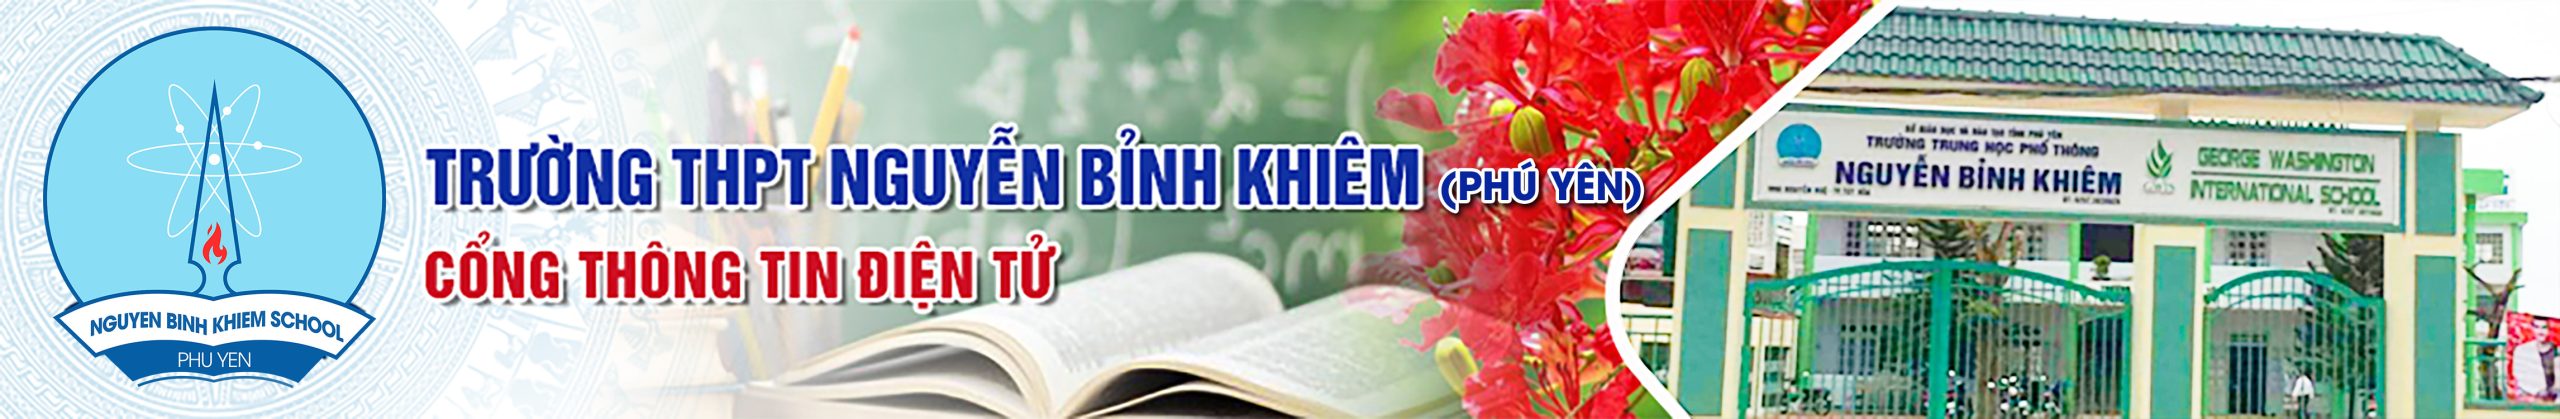 Nguyễn Bỉnh Khiêm phú yên